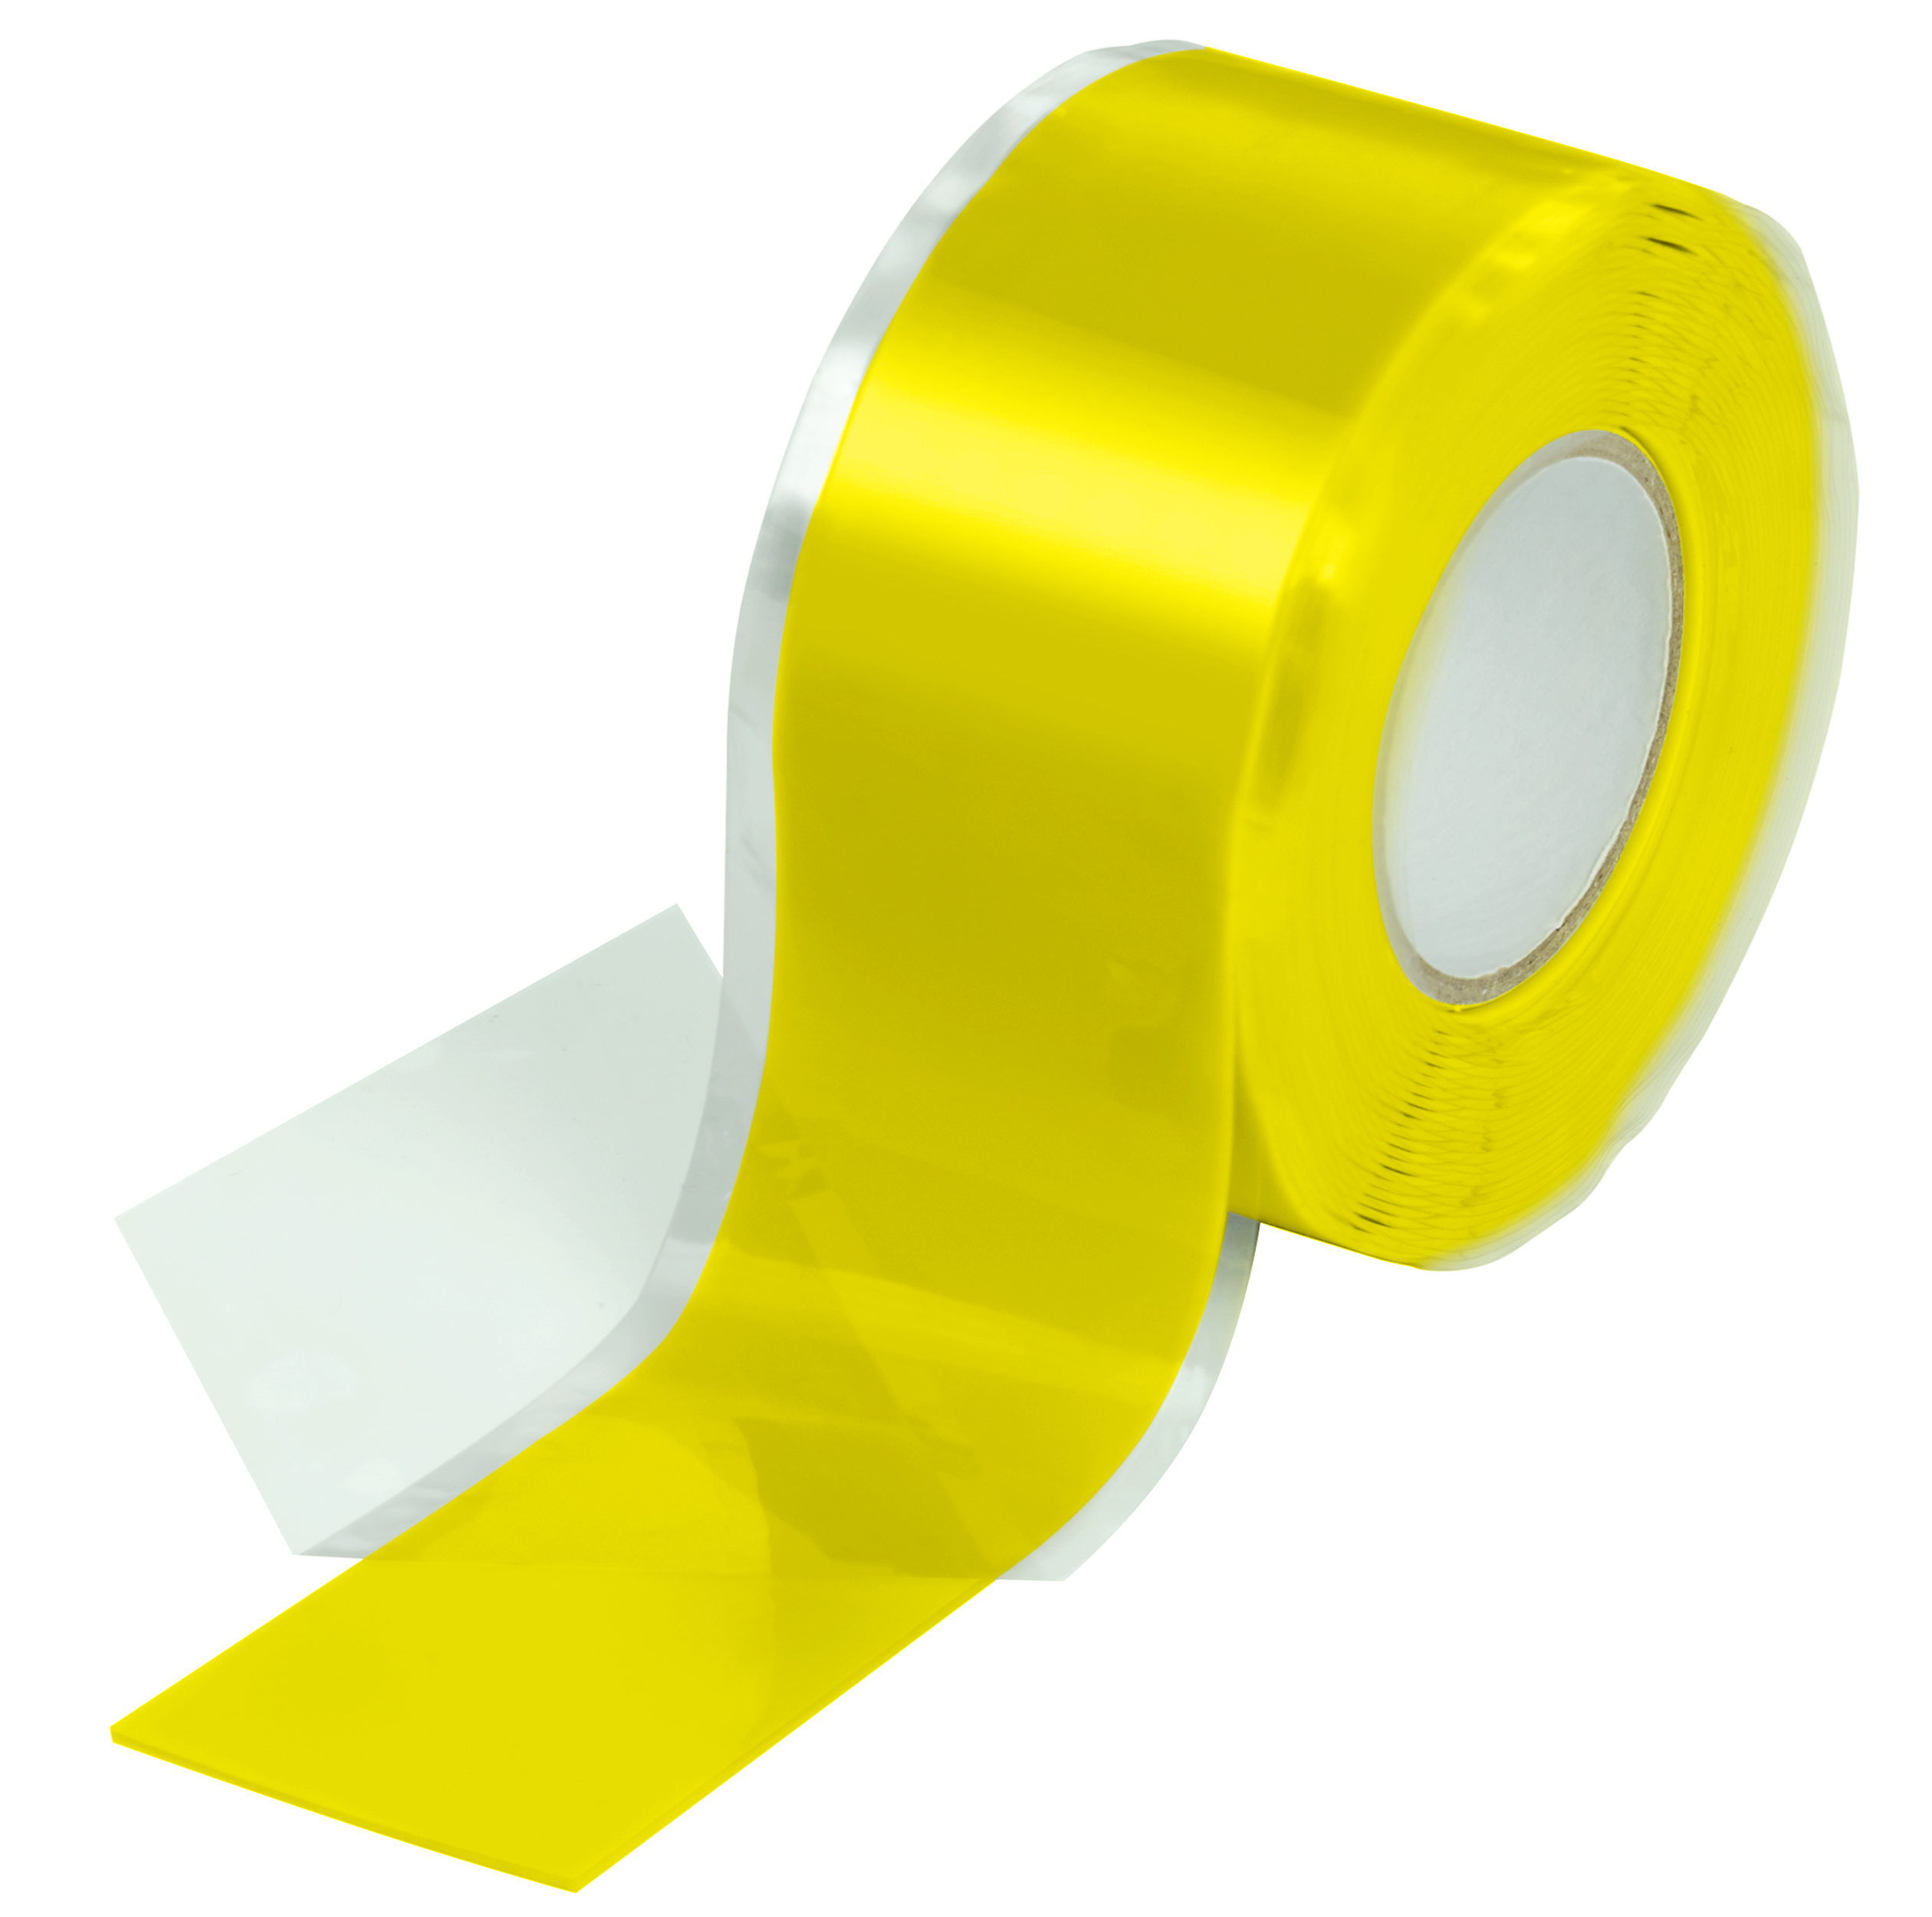 Poppstar selbstverschweißendes Silikonband gelb 3m x 25mm